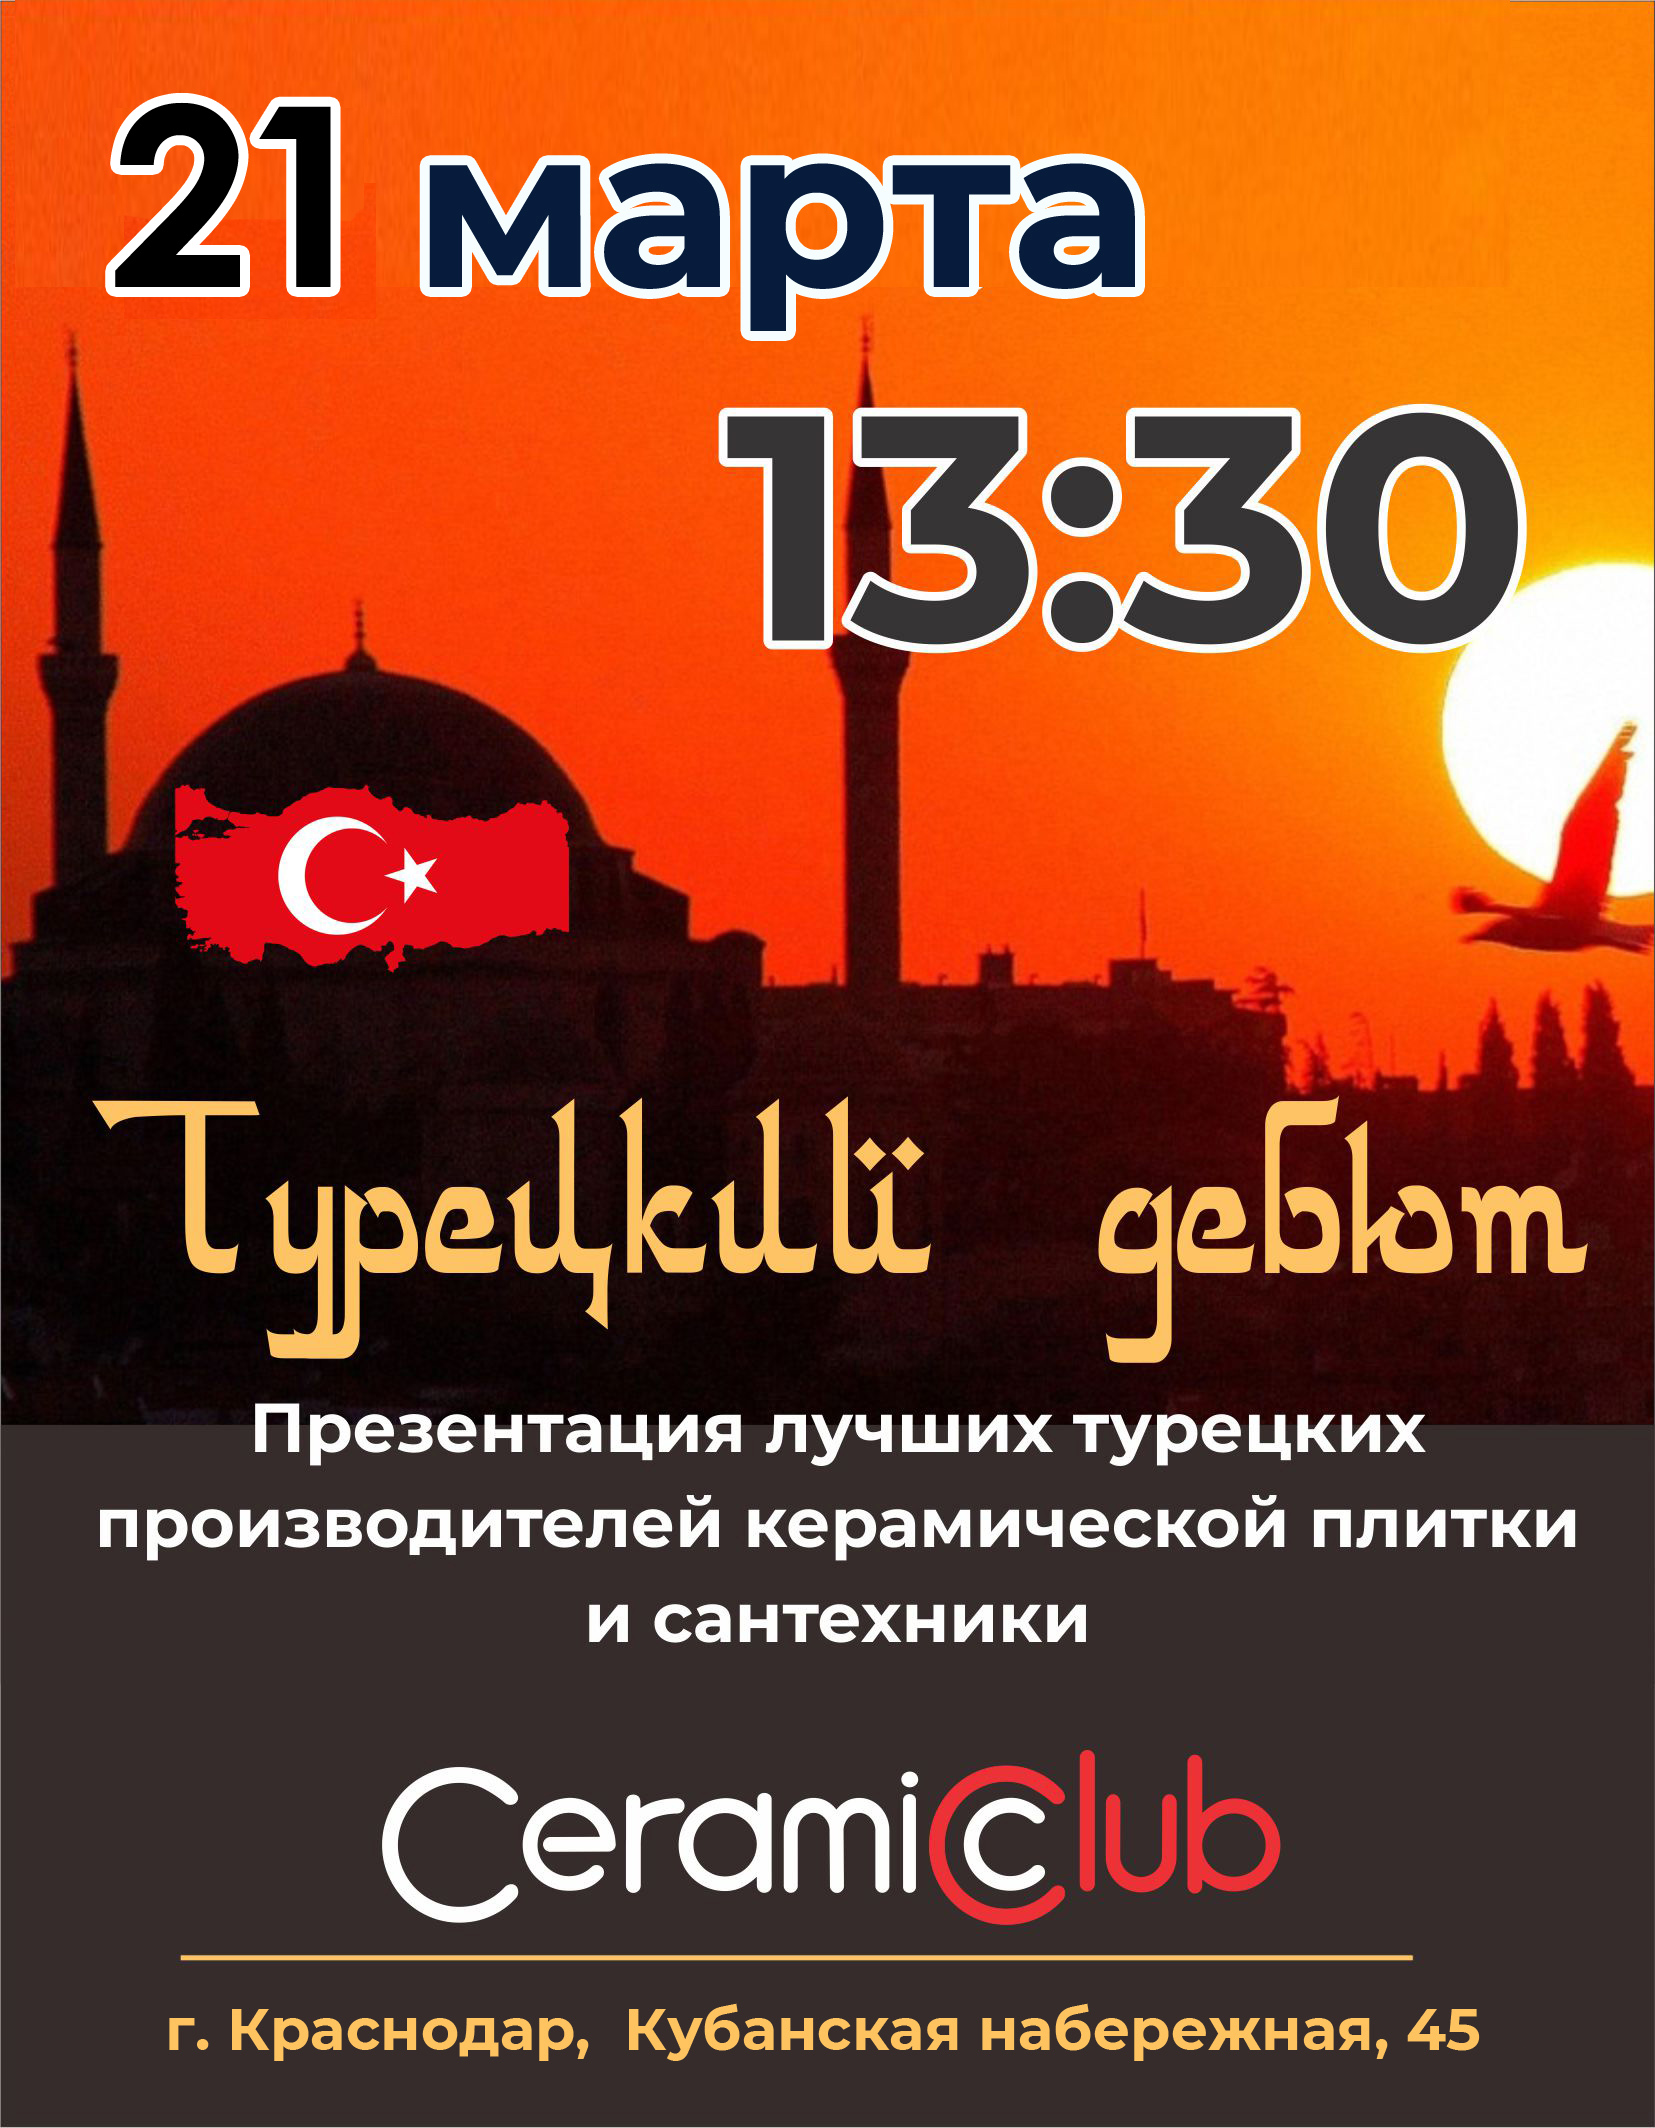 Турецкий дебют в CeramicClub